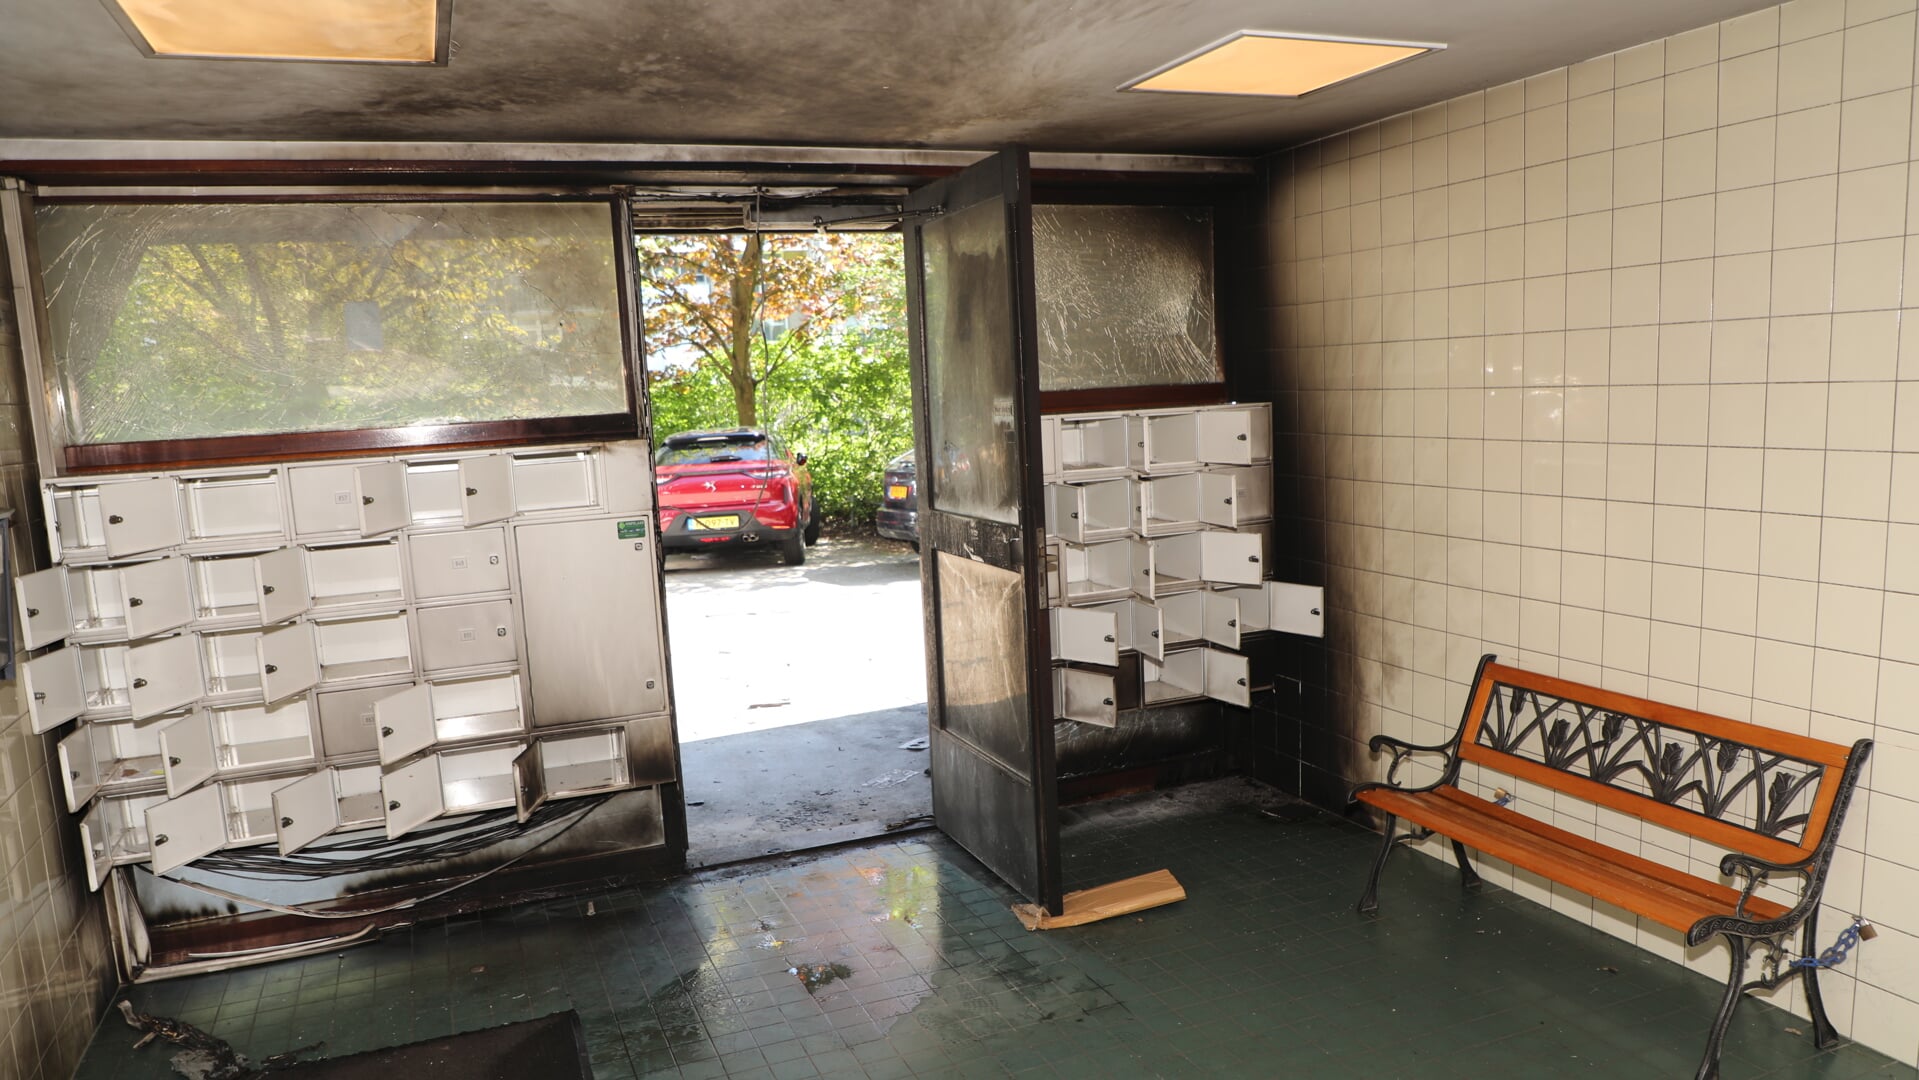 Explosie en poging brandstichting bij ingang van flat in Den Haag